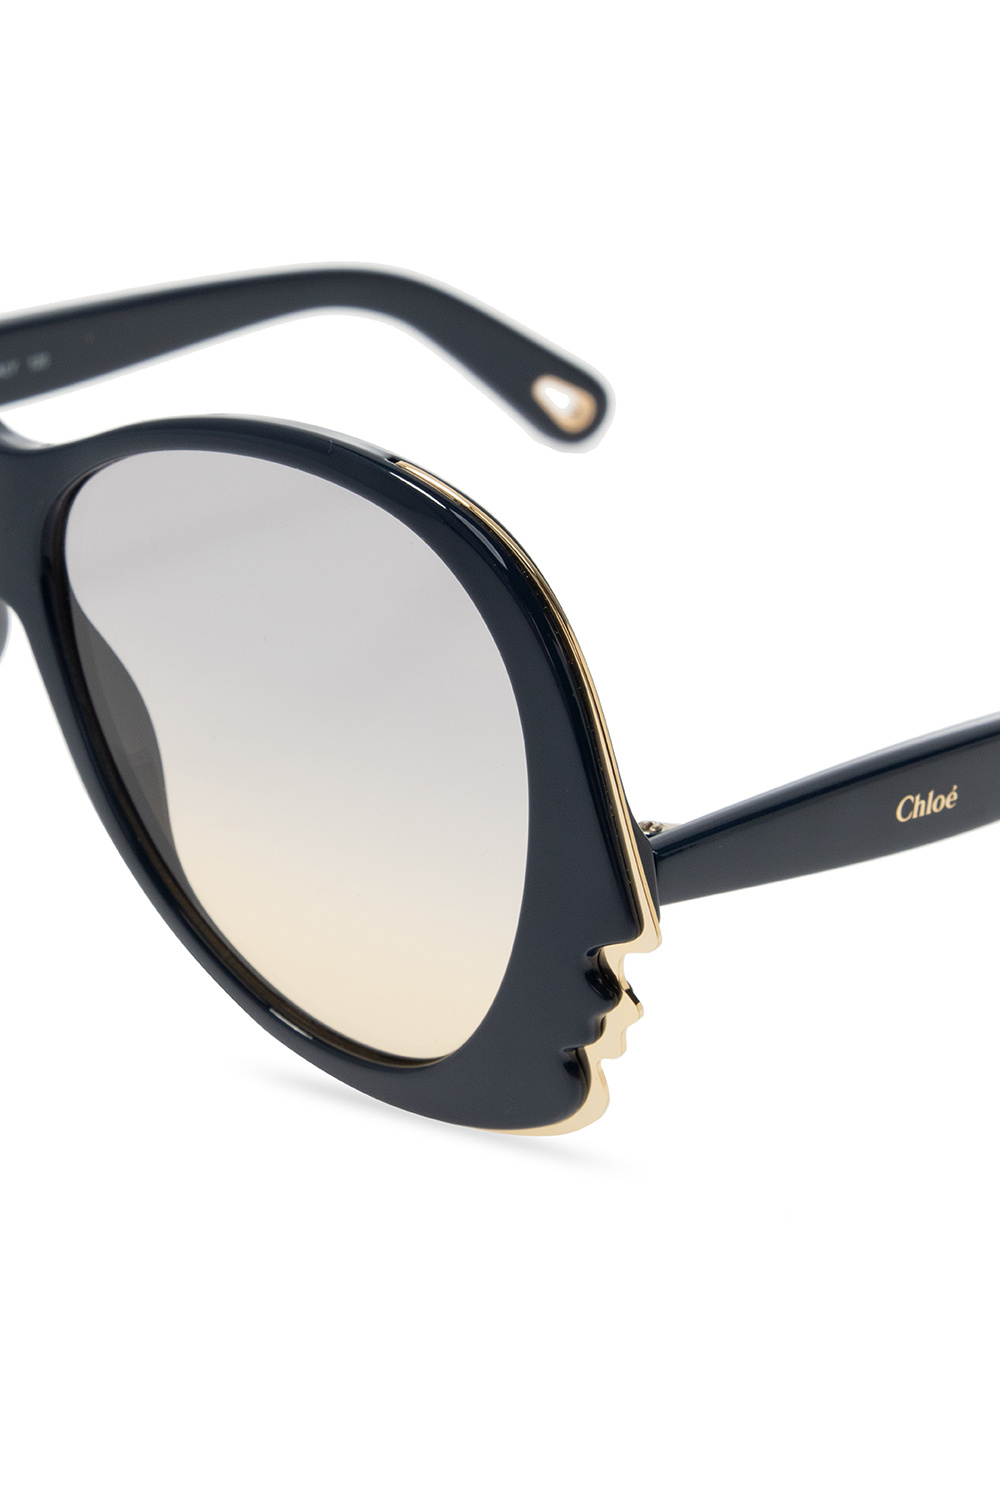 Chloé U8 rectangle-frame sunglasses